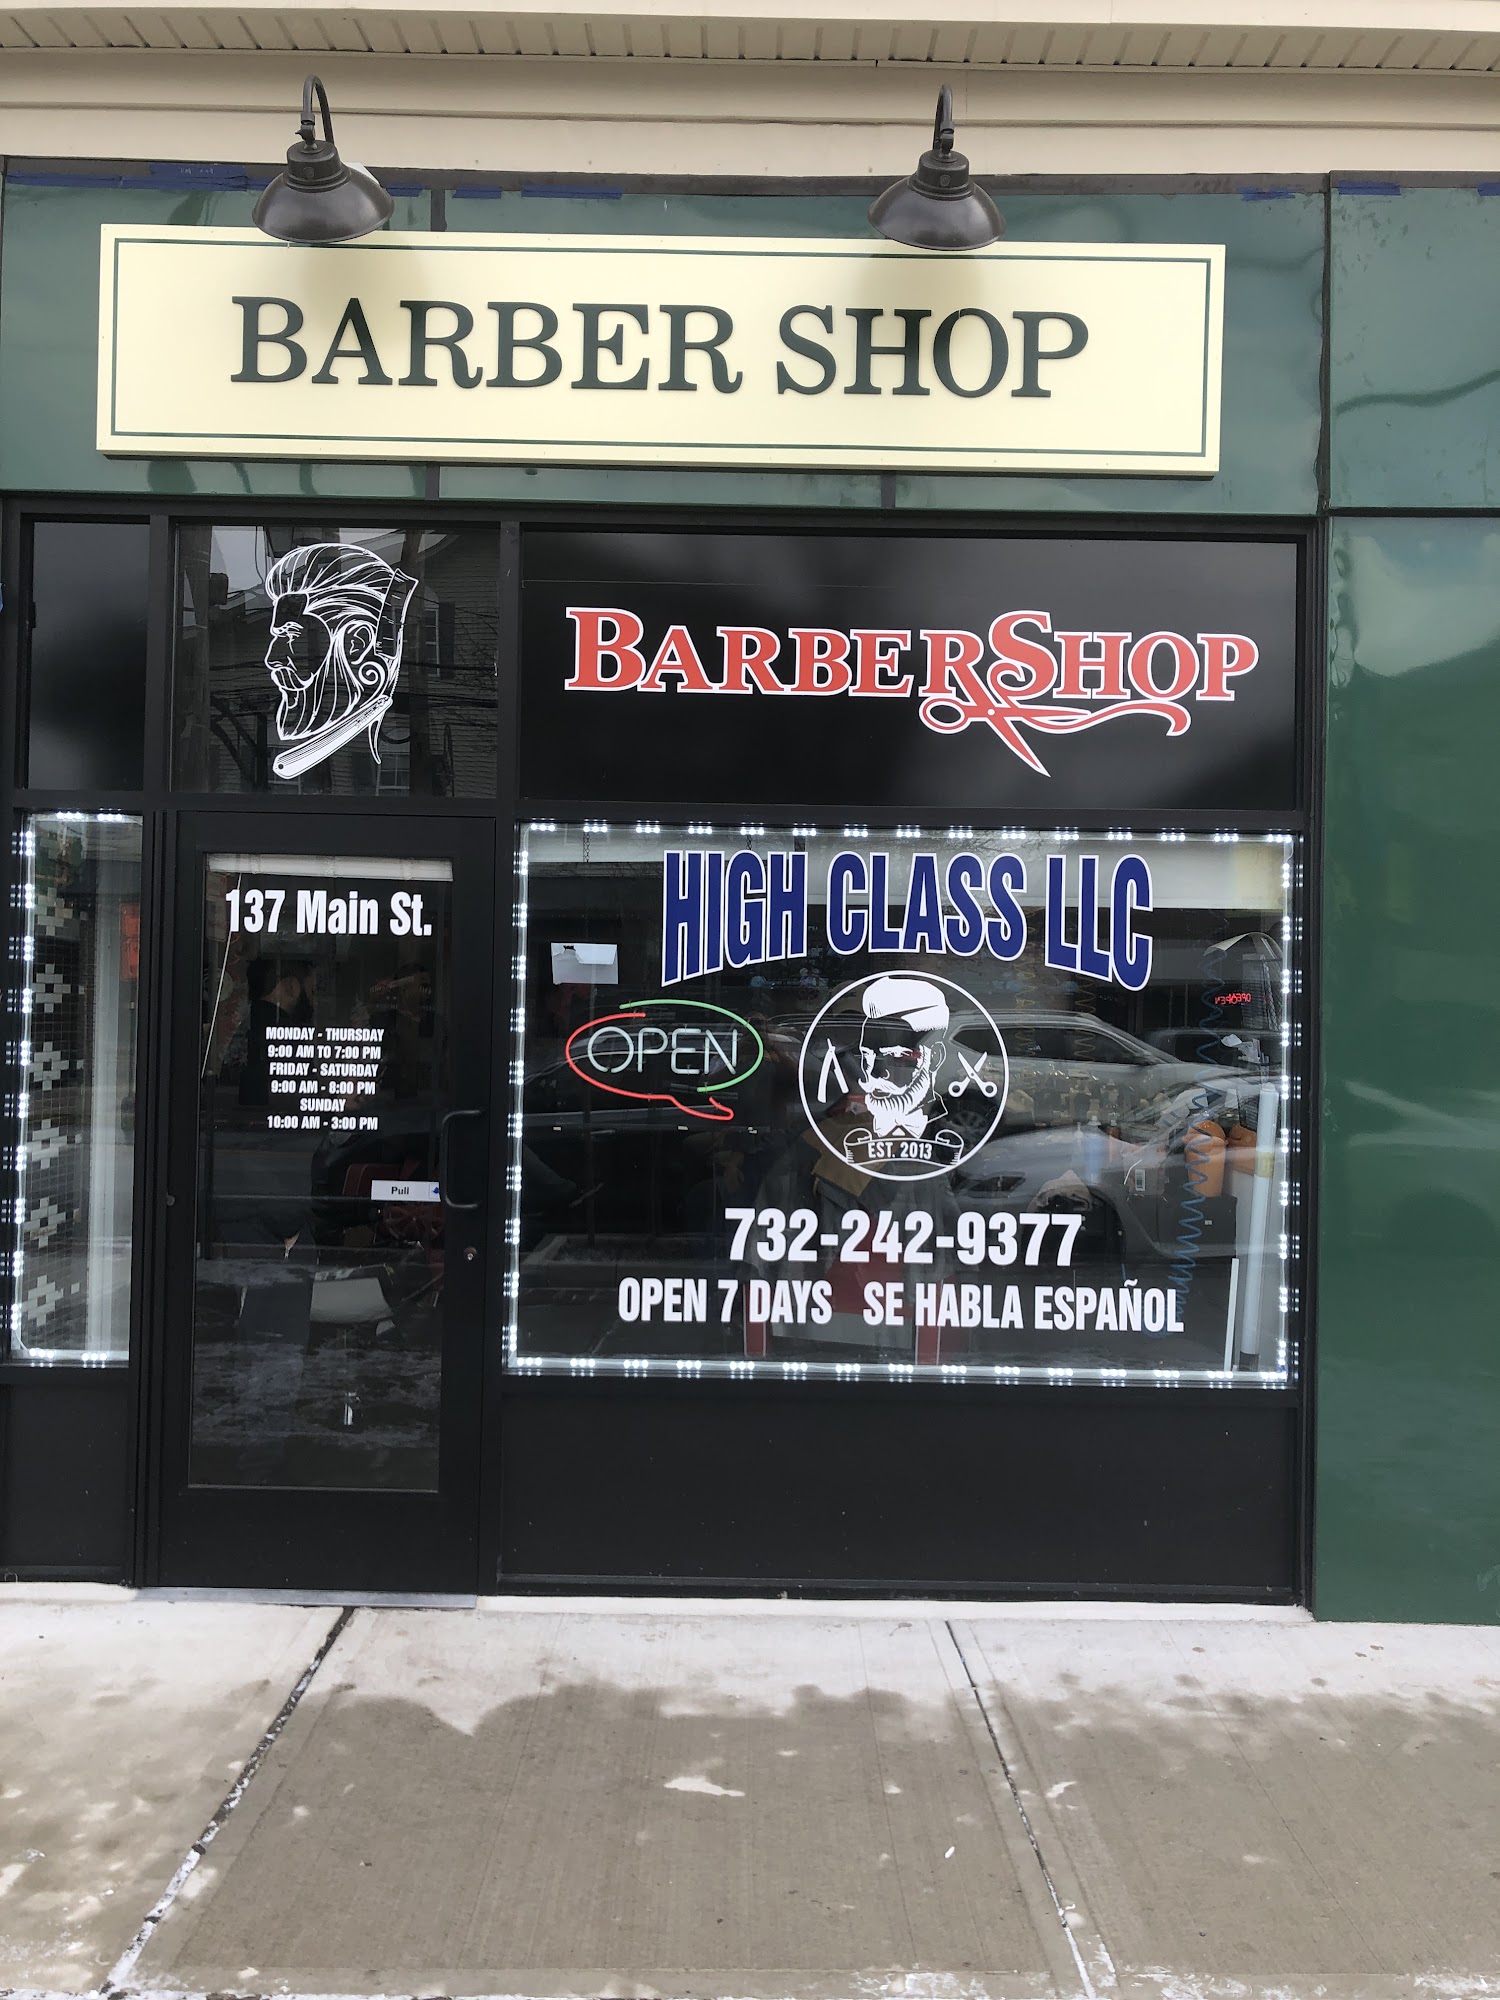 High class barber shop